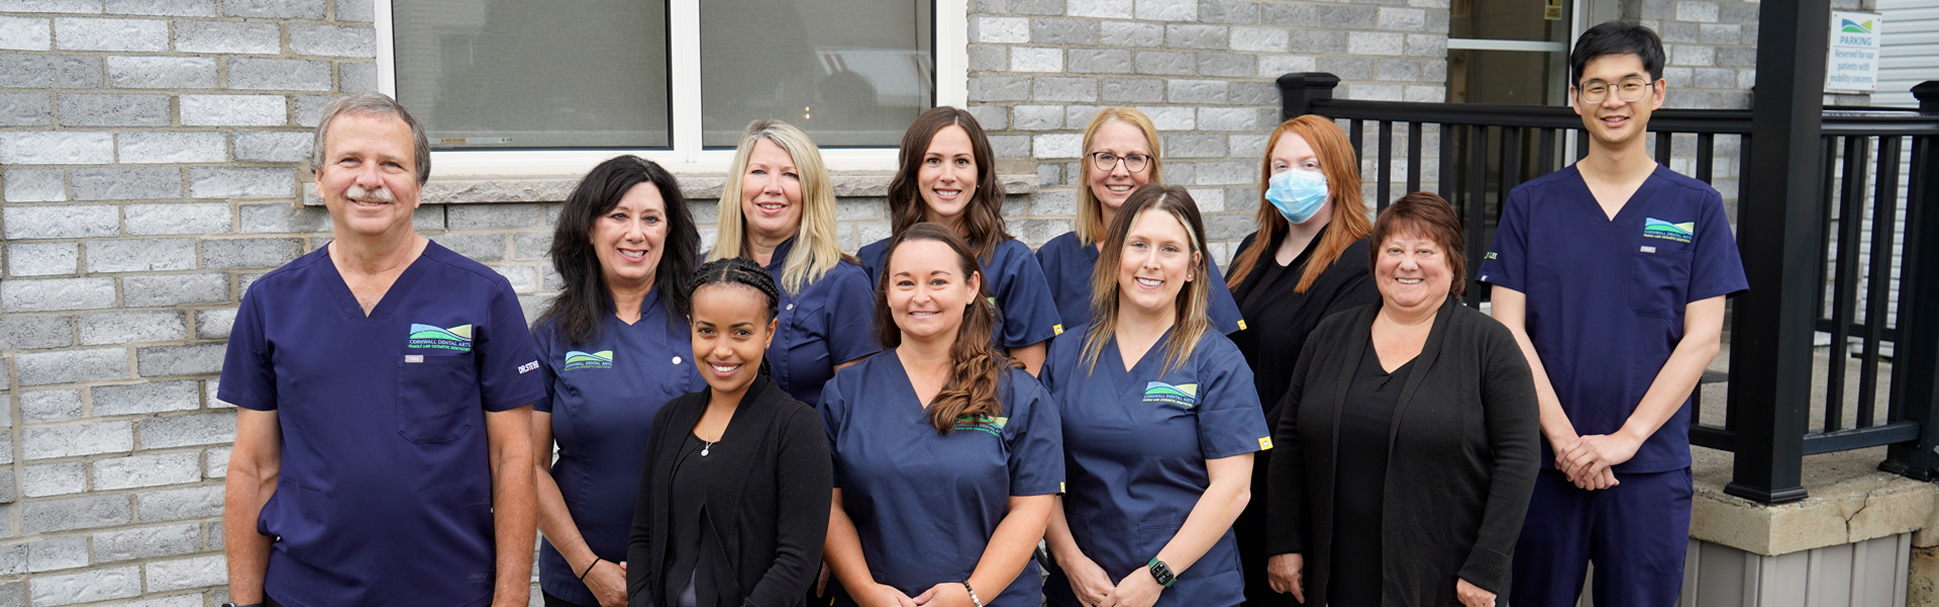 Our Cornwall Dental Arts team 